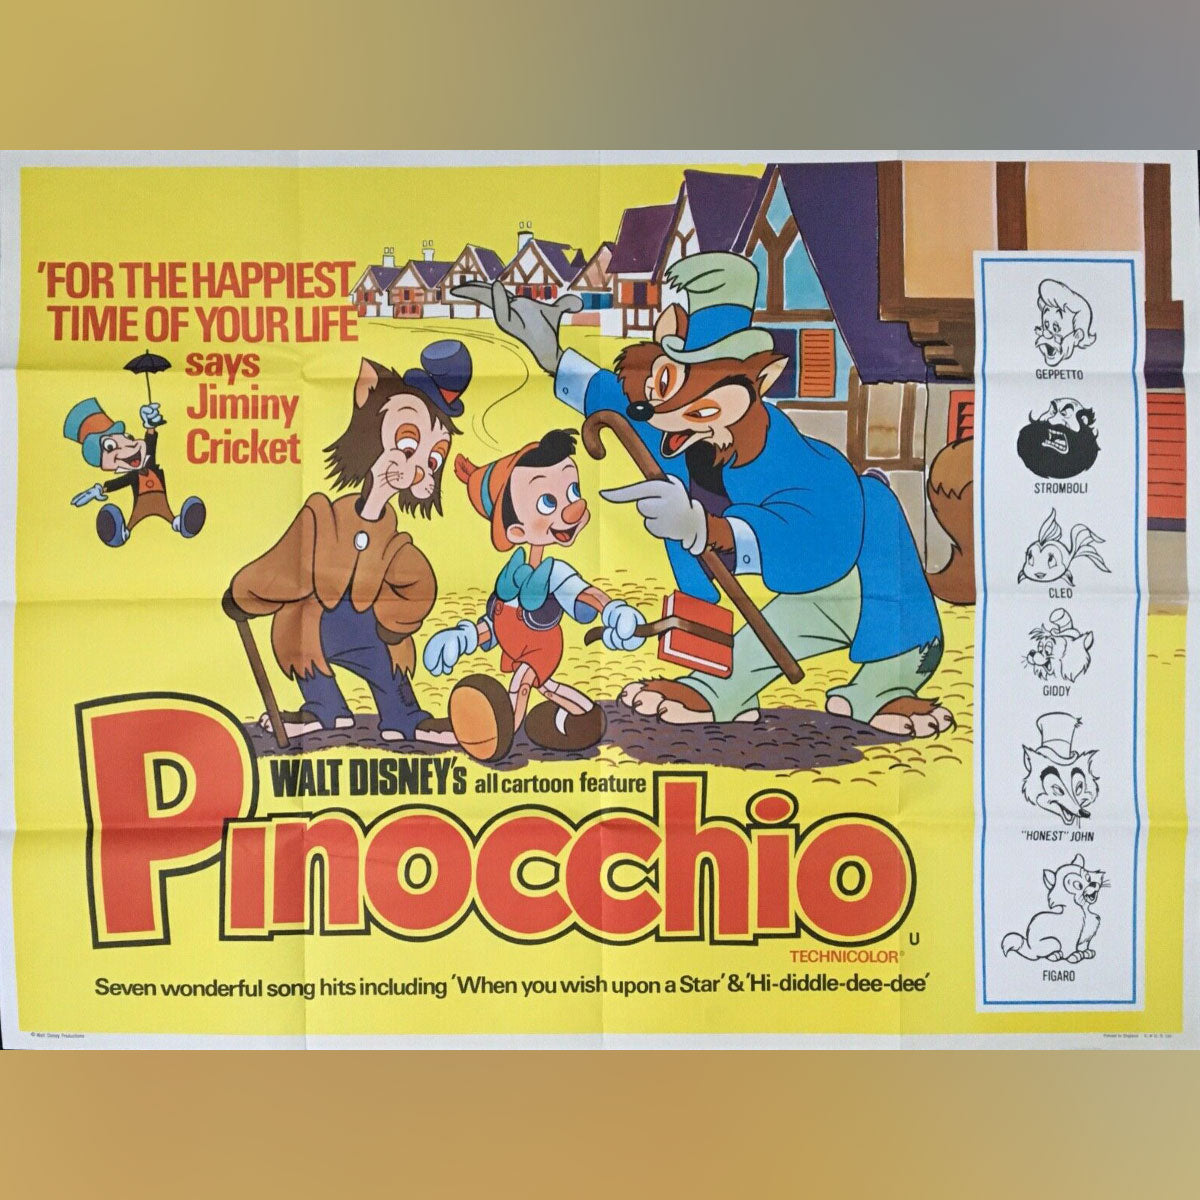 Pinocchio (R1970s)